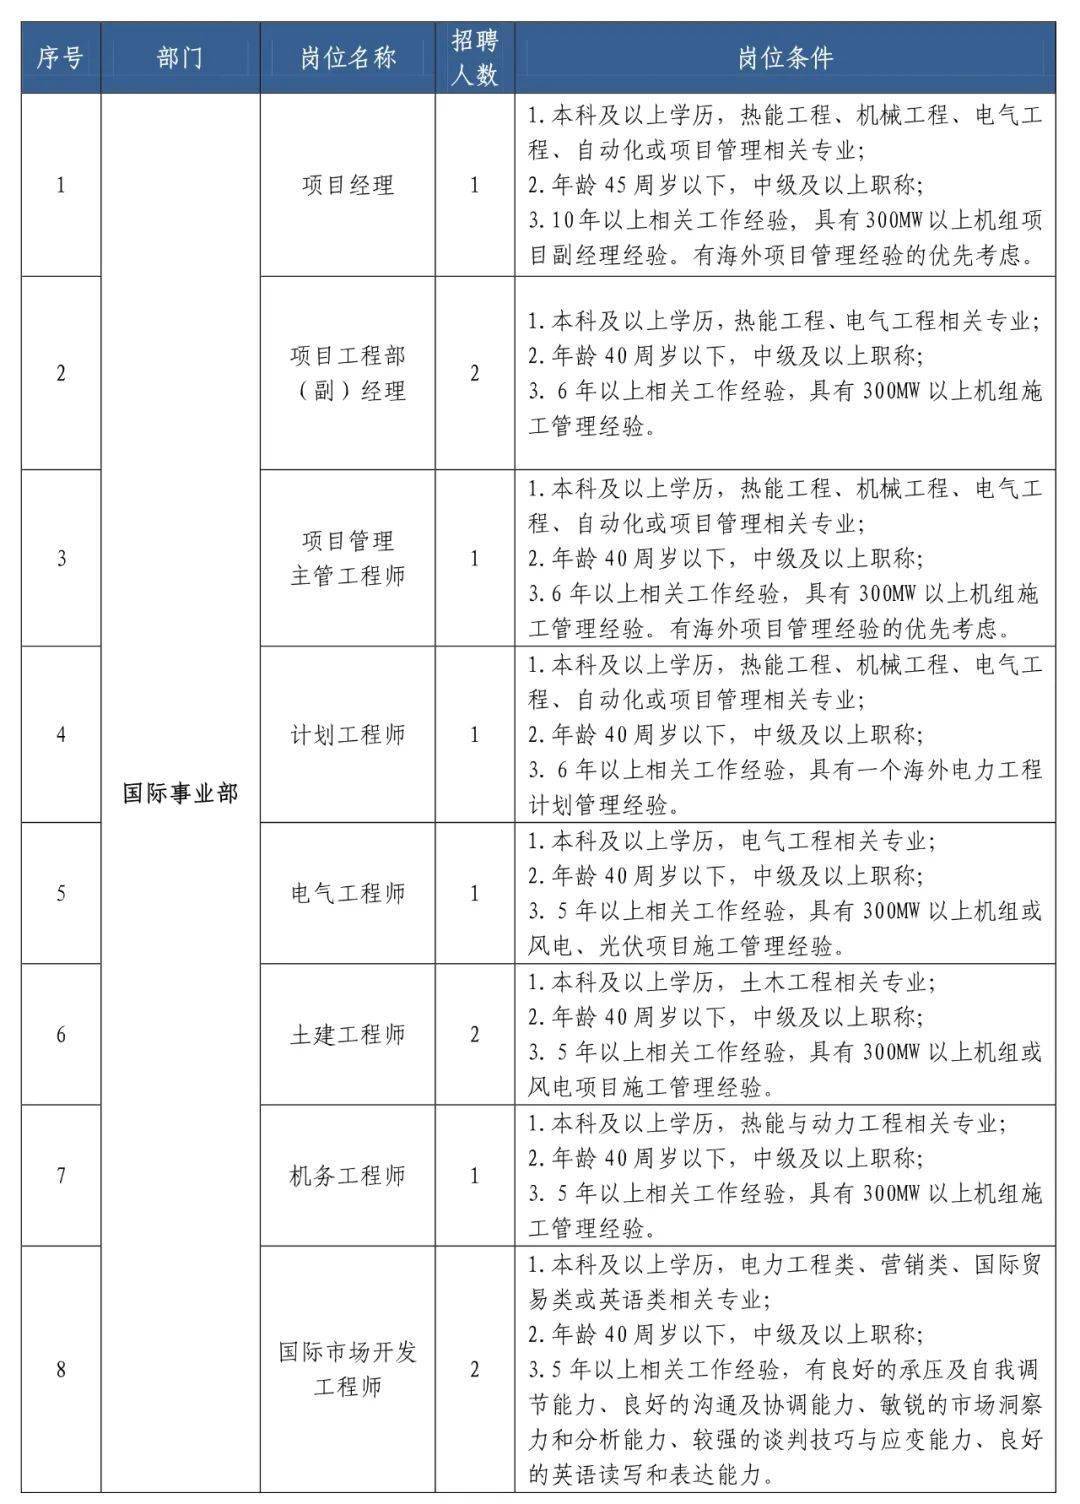 2019年福建省送变电工程有限公司招聘公告(部分条件放宽了)